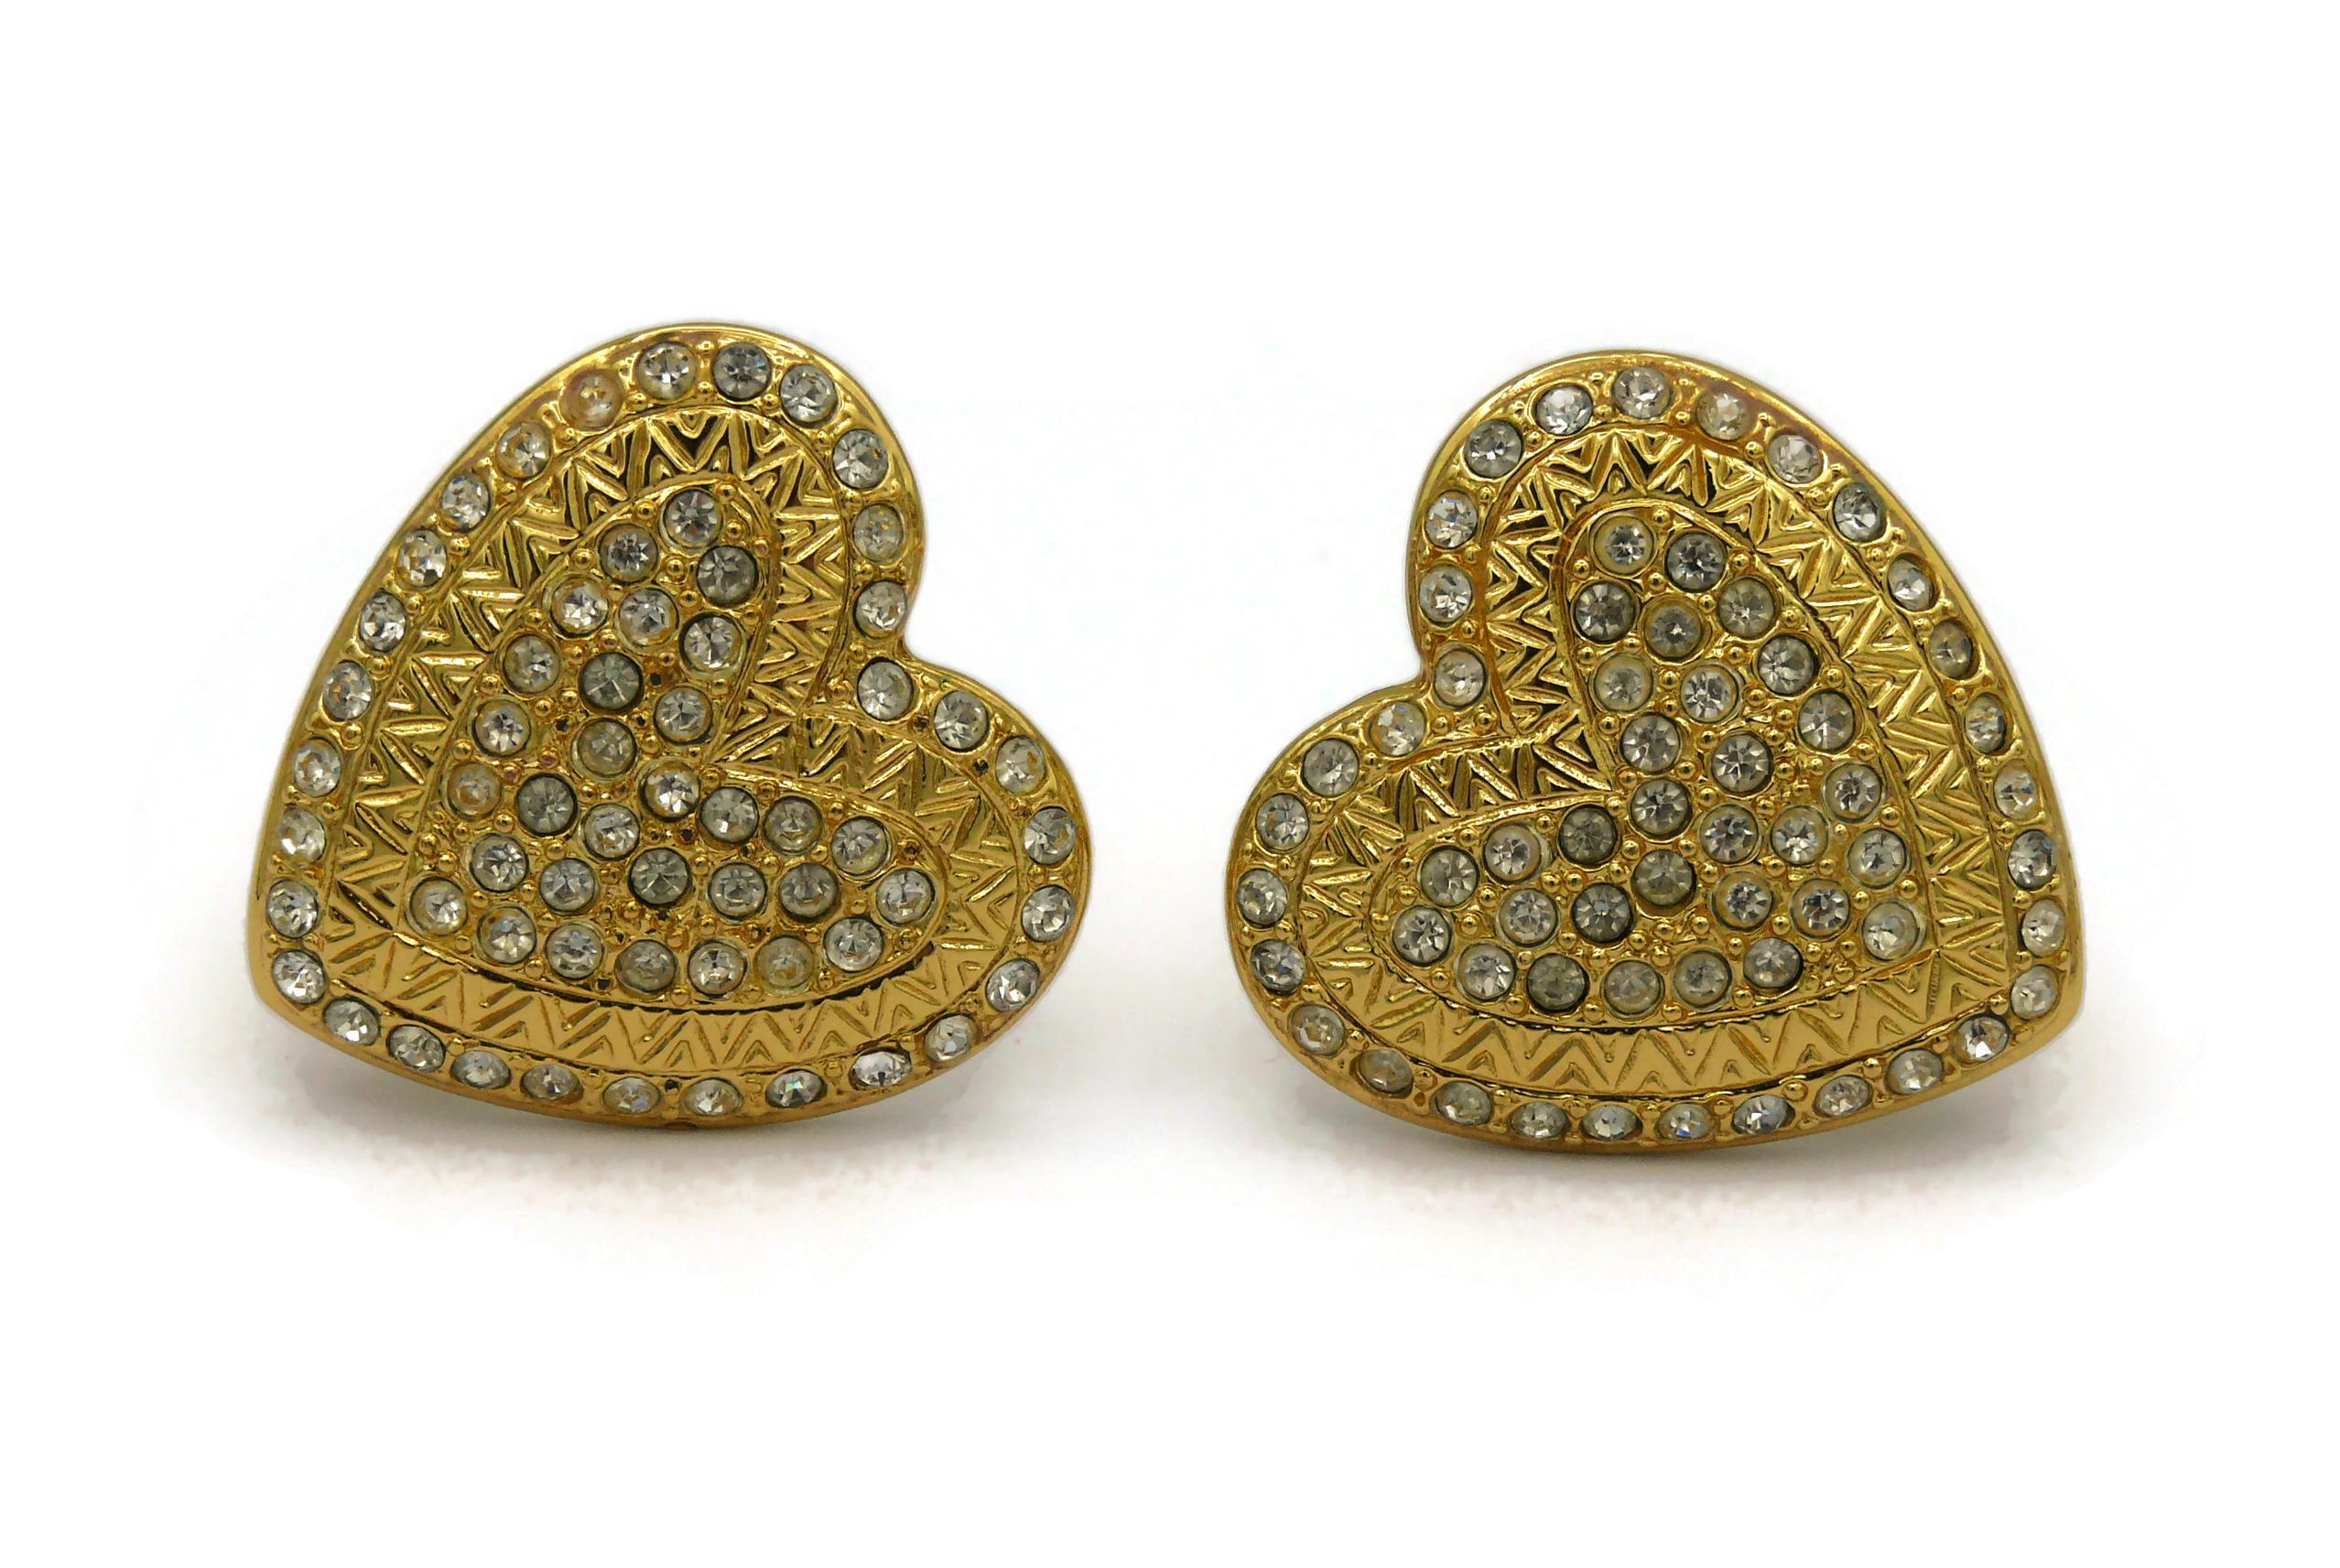 ysl heart earrings gold